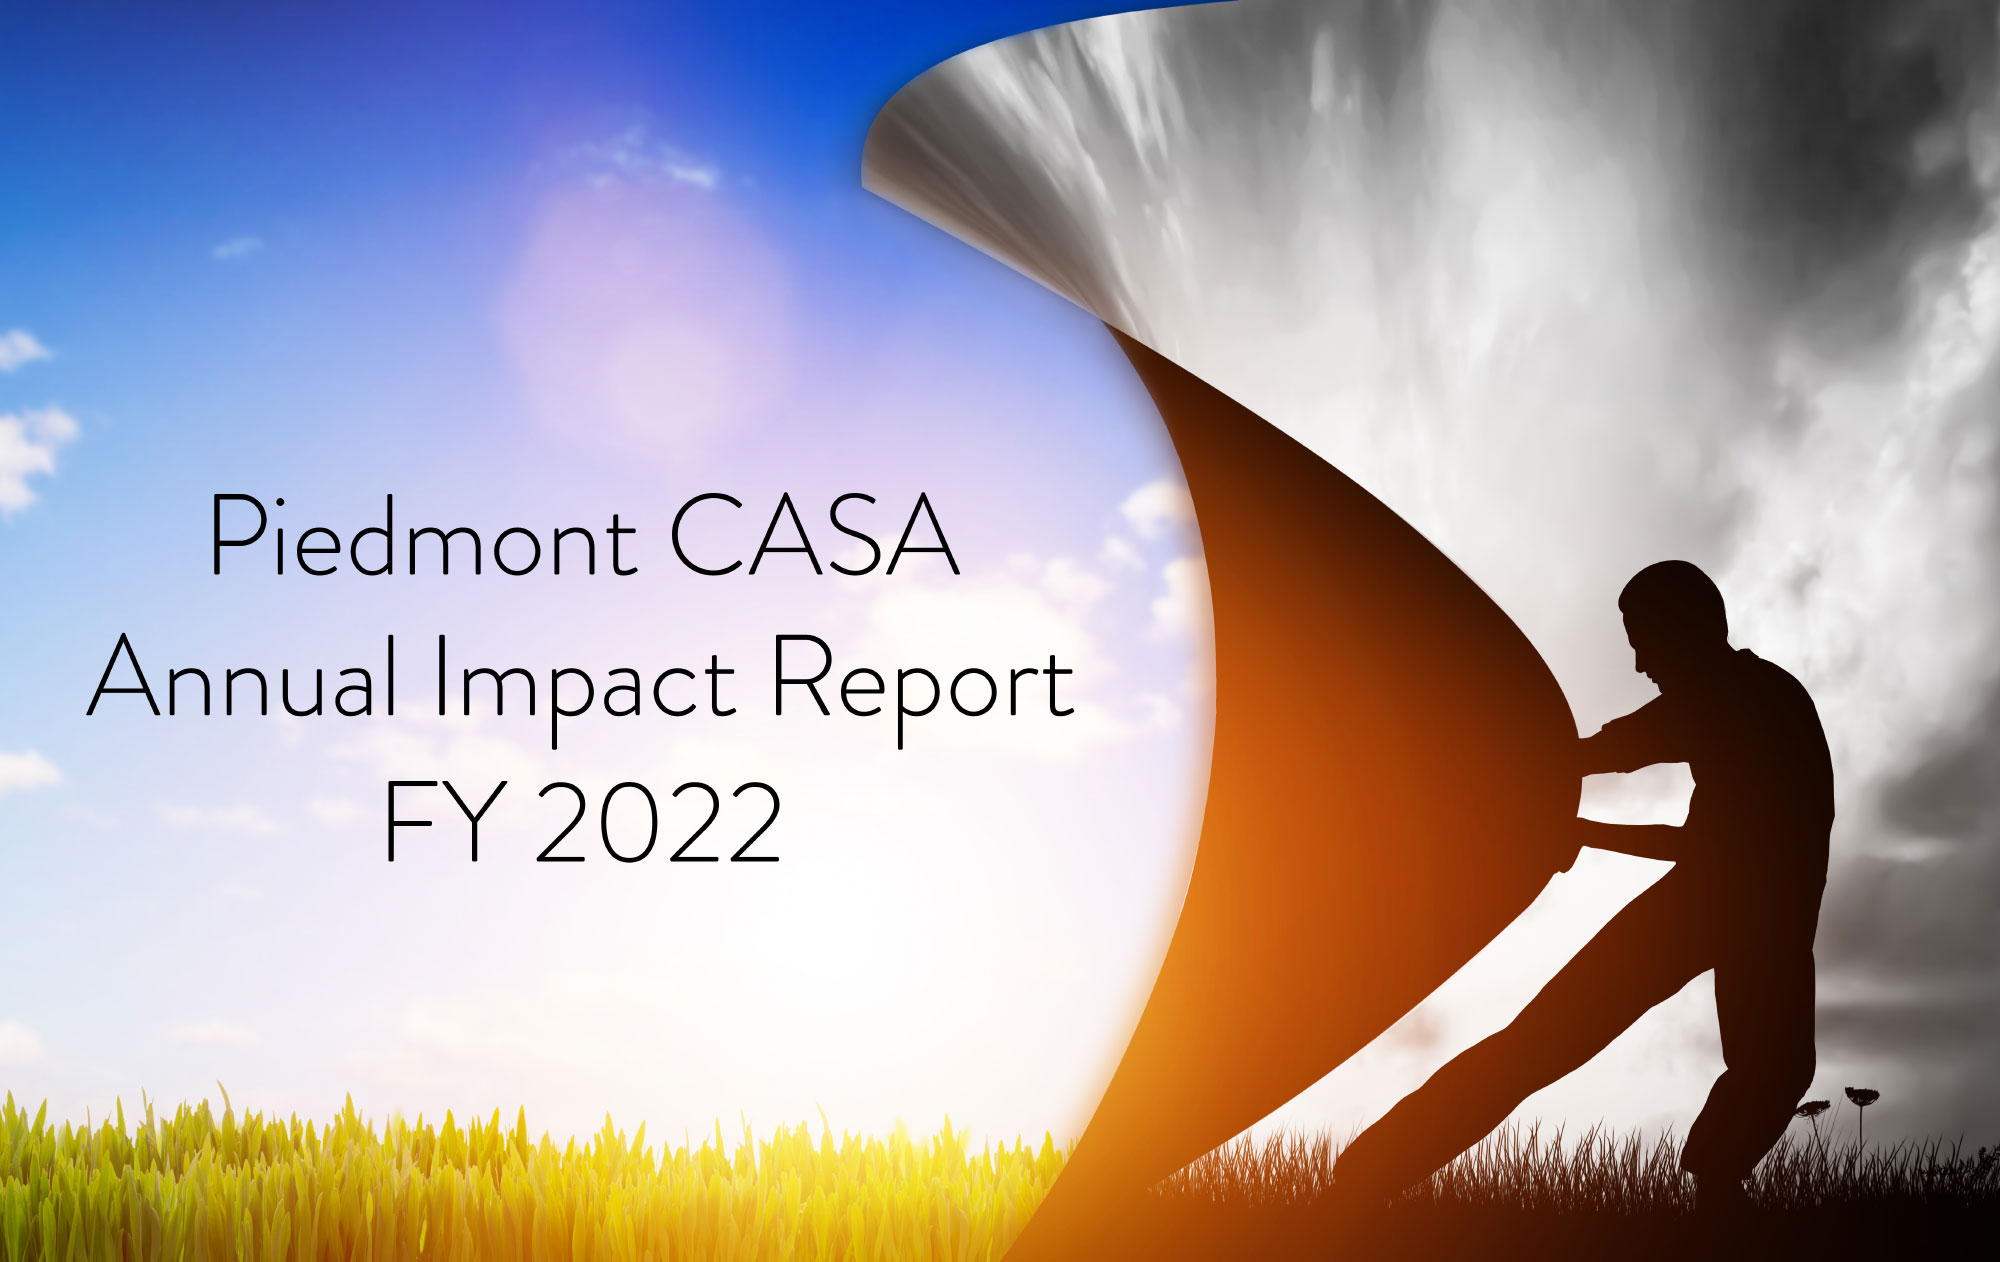 PCASA-FY22-Годовой отчет о воздействии